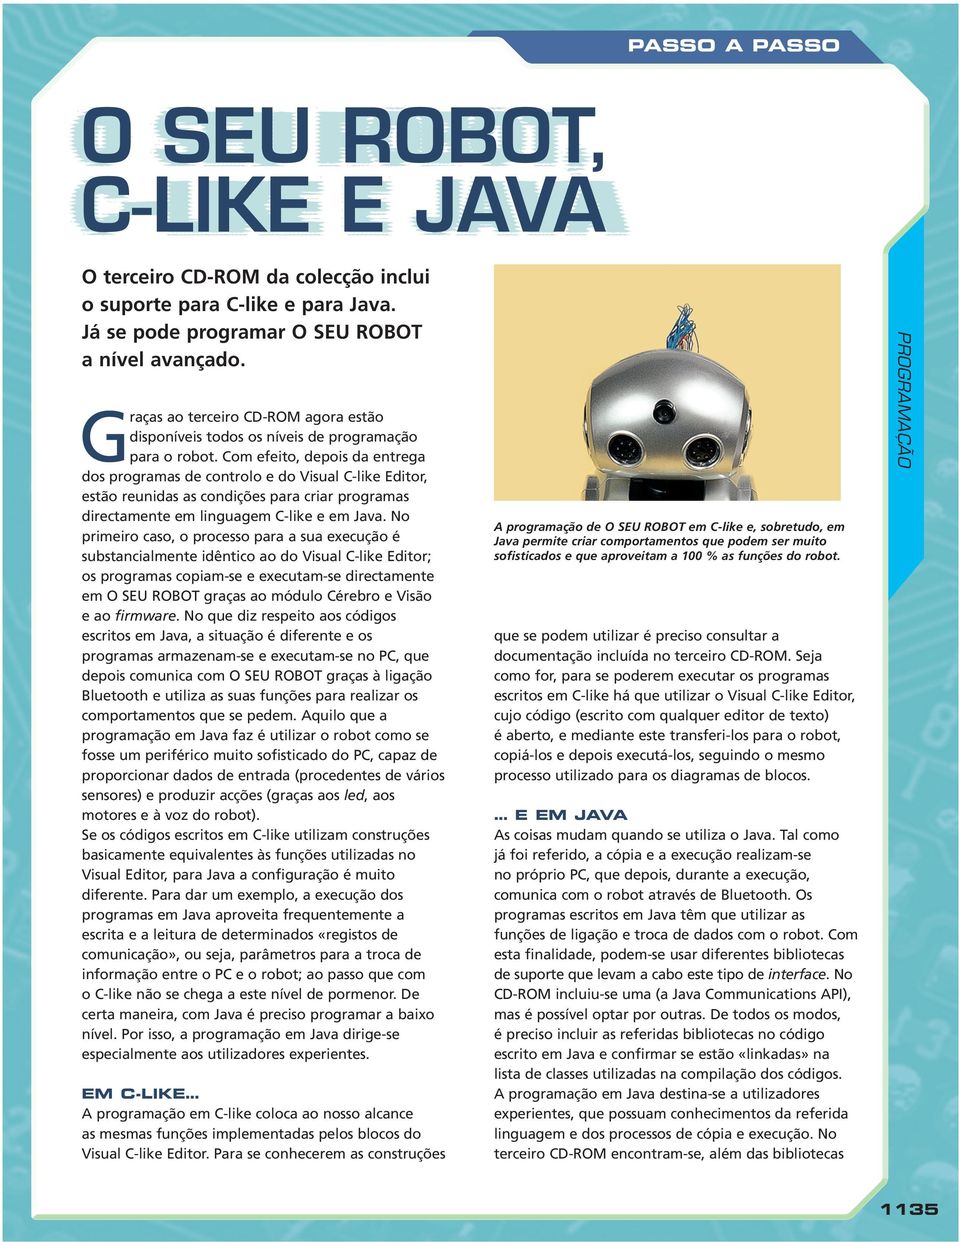 Com efeito, depois da entrega dos programas de controlo e do Visual C-like Editor, estão reunidas as condições para criar programas directamente em linguagem C-like e em Java.